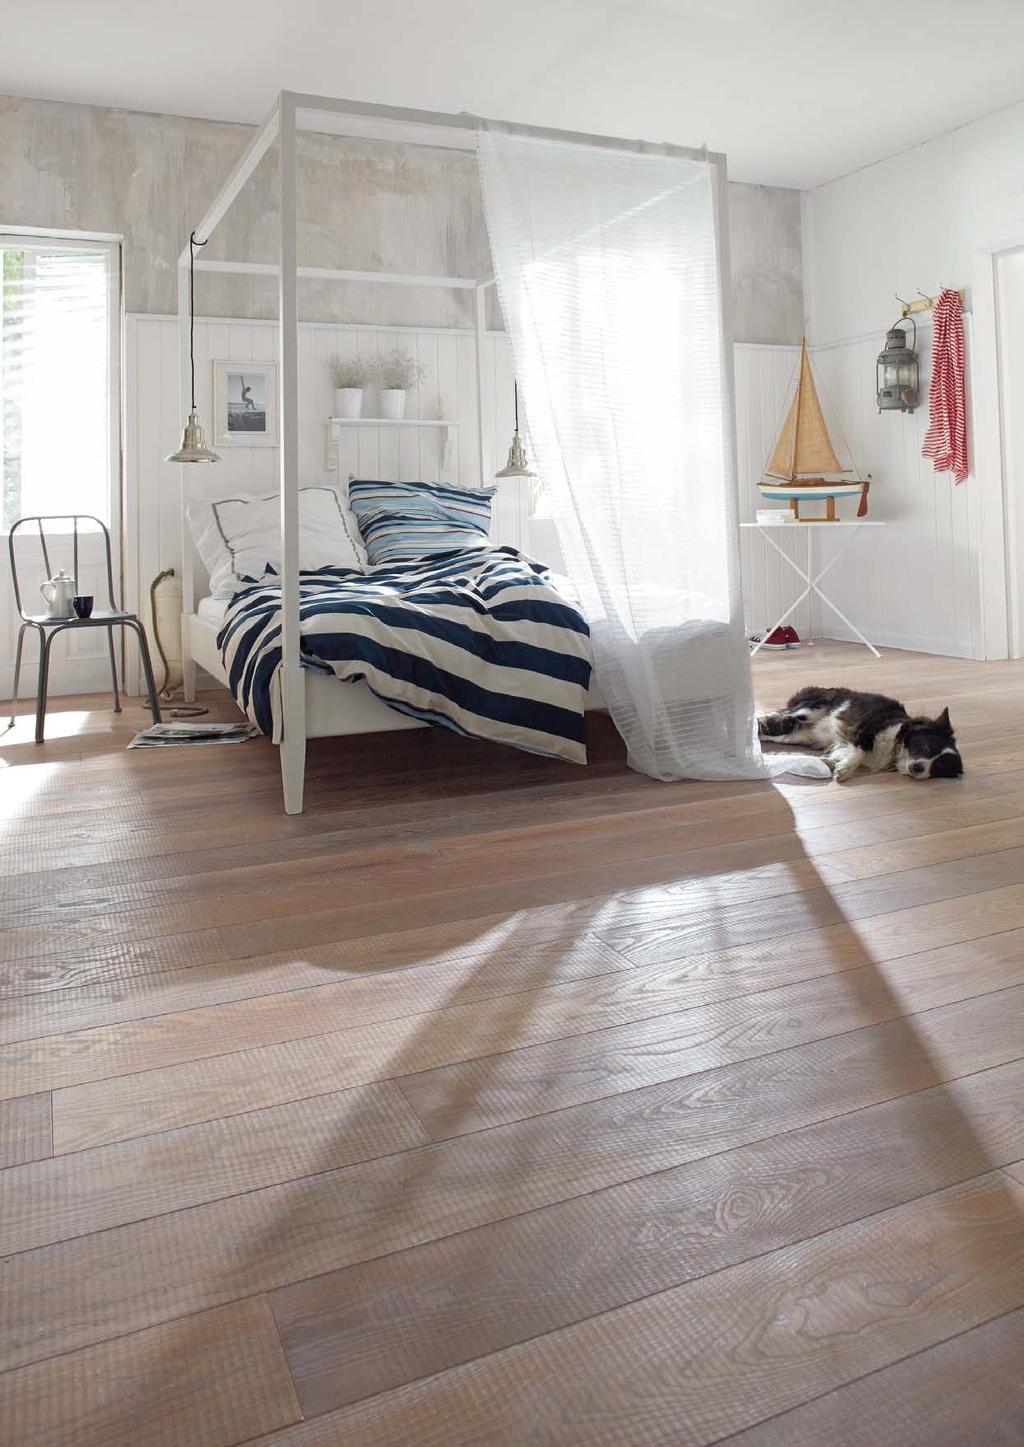 NACHHALTIGKEIT Echtholz verleiht Räumen eine warme Ausstrahlung, die mit keinem anderen Material so zu erreichen ist.